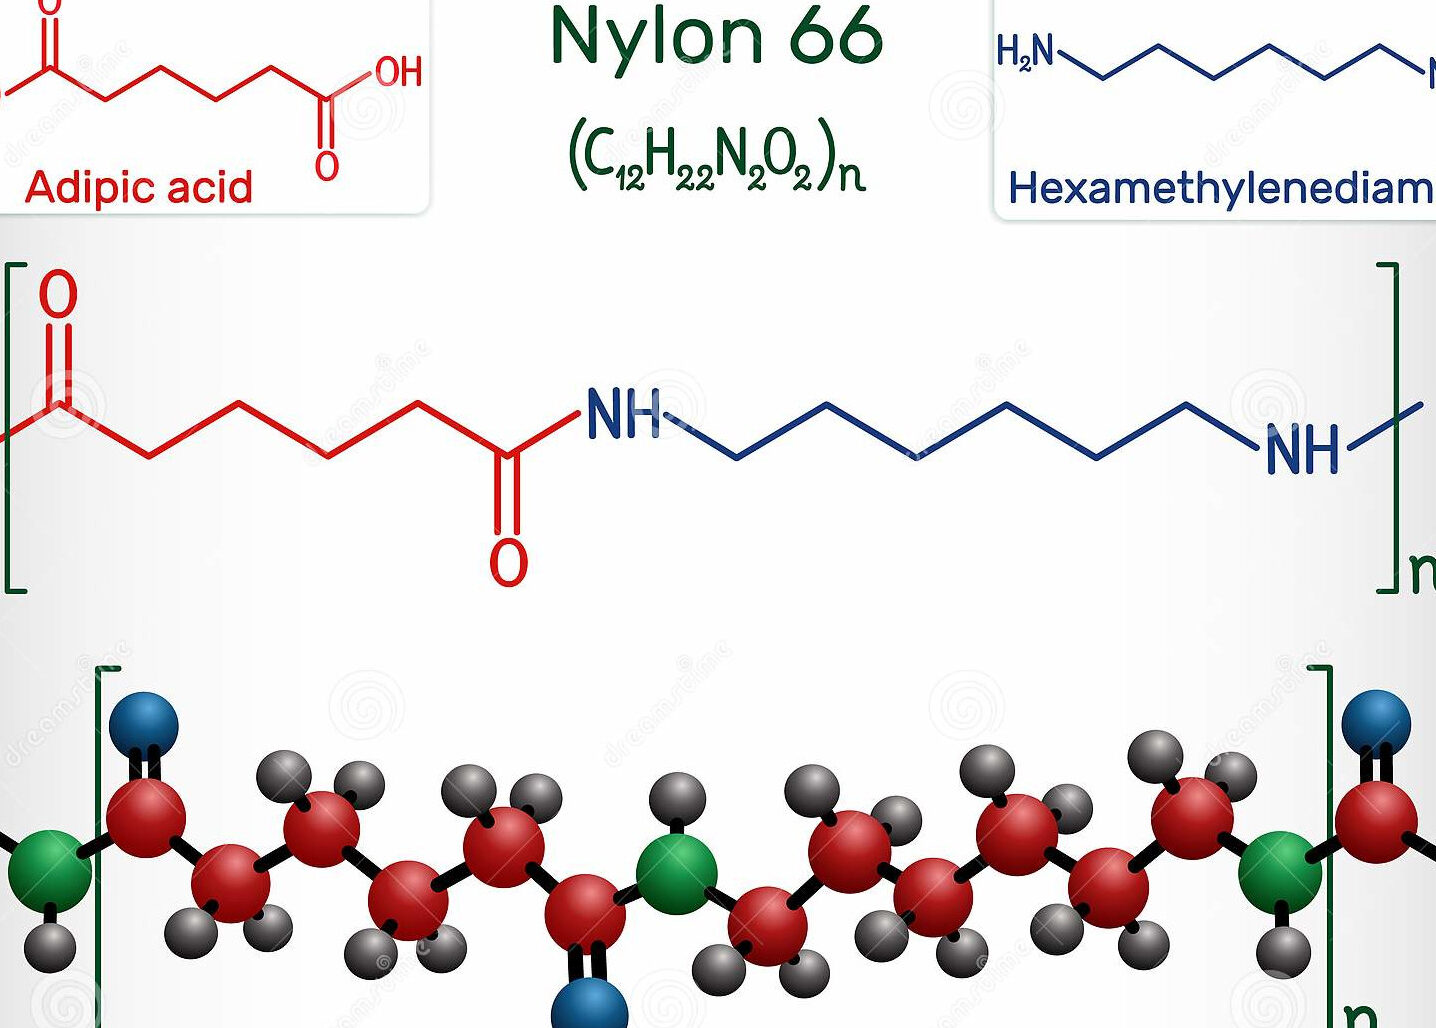 El peso molecular del nylon 66: ¿Qué es y por qué es importante?